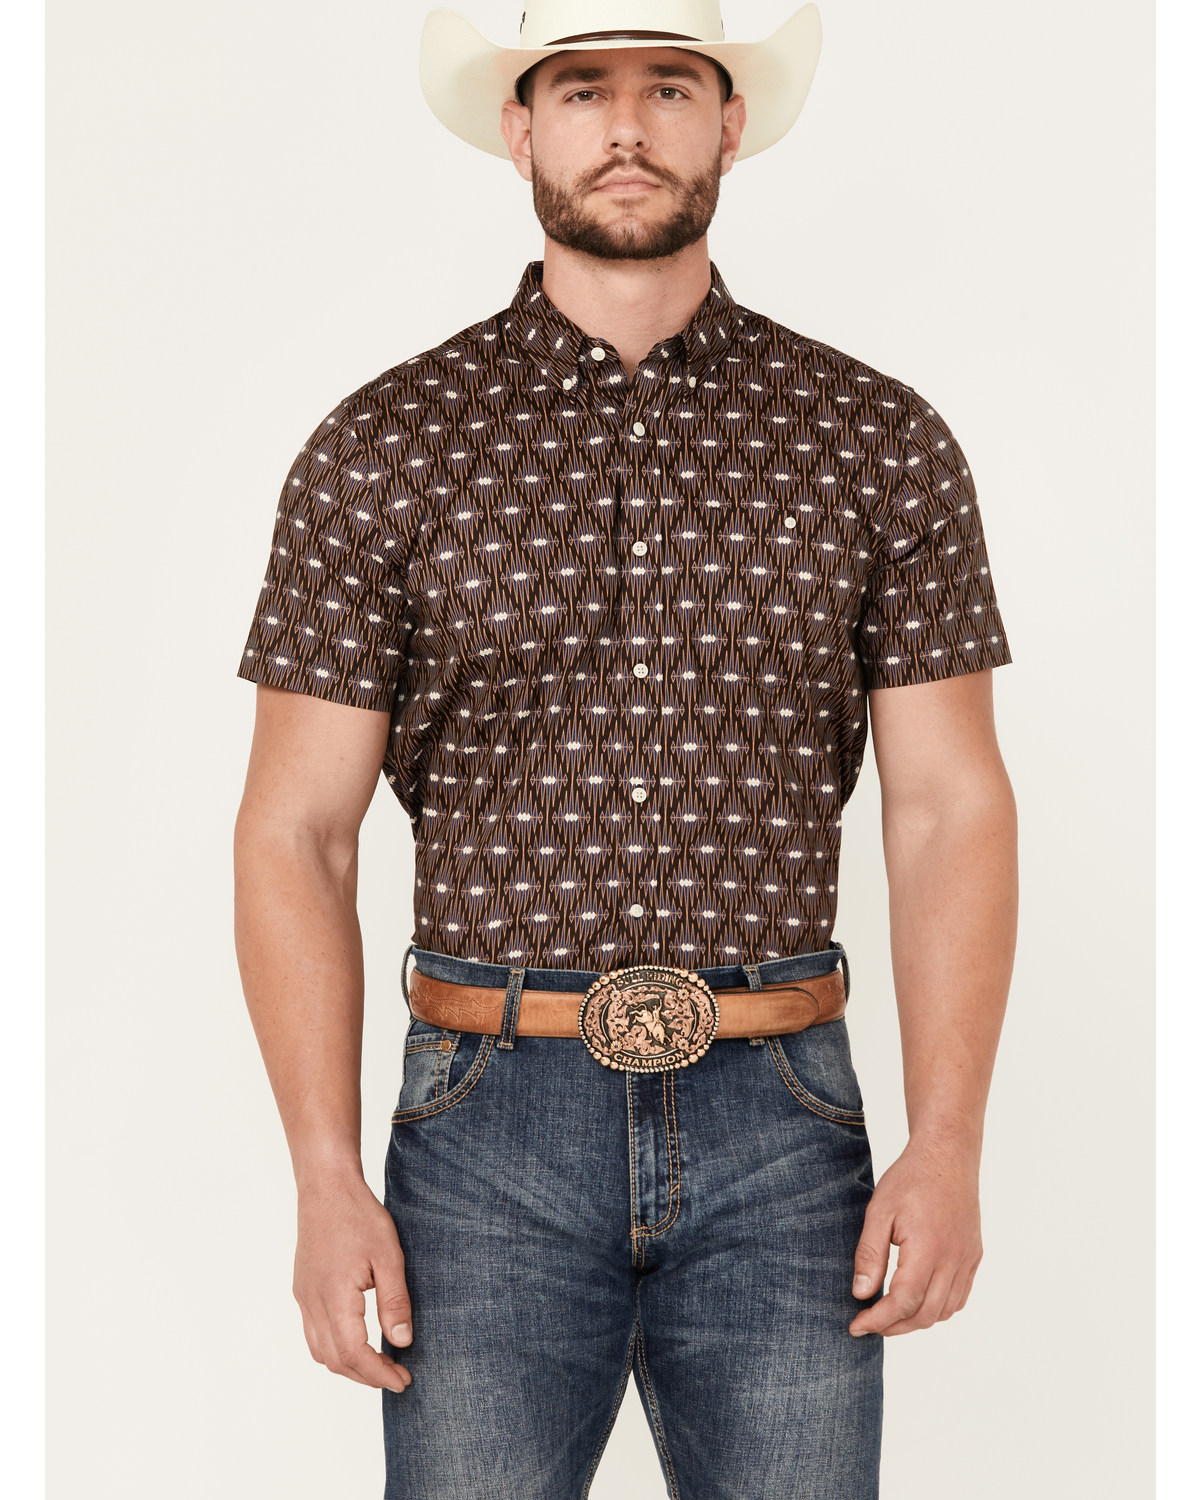 RANK 45® Men's Asscher Geo Print Short Sleeve Button-Down Western Shirt